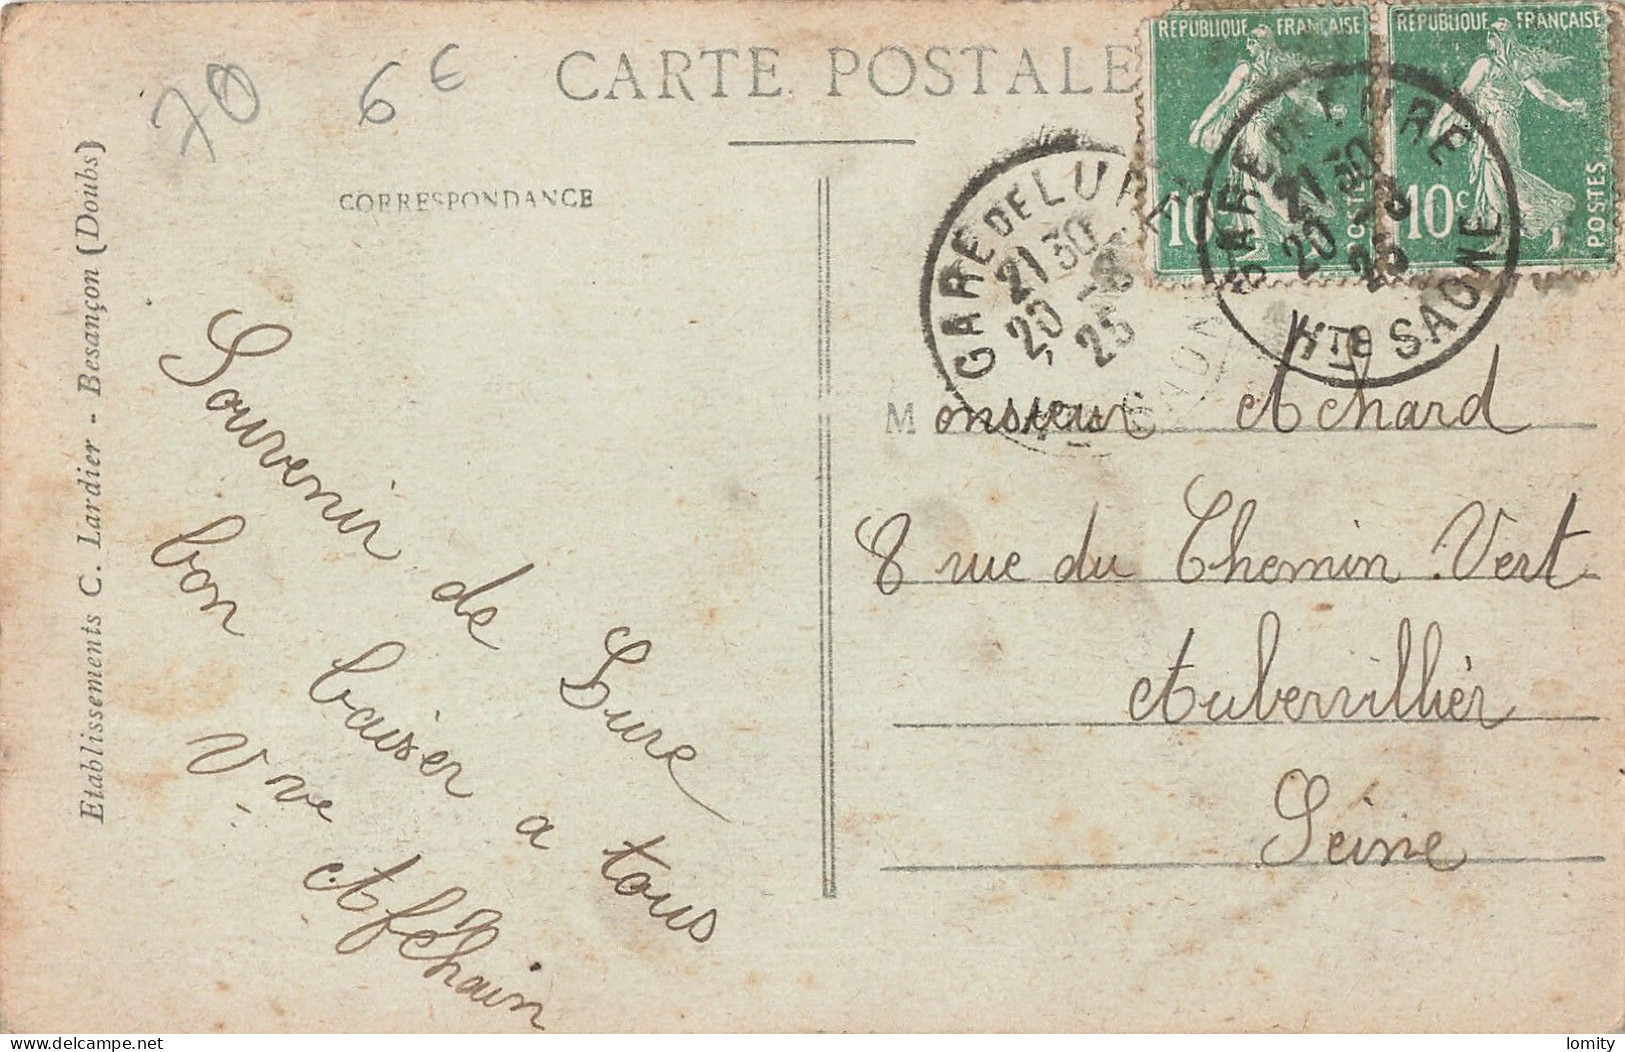 Destockage lot de 7 cartes postales CPA Haute Saone Vesoul Hericourt Lure Luxeuil les Bains